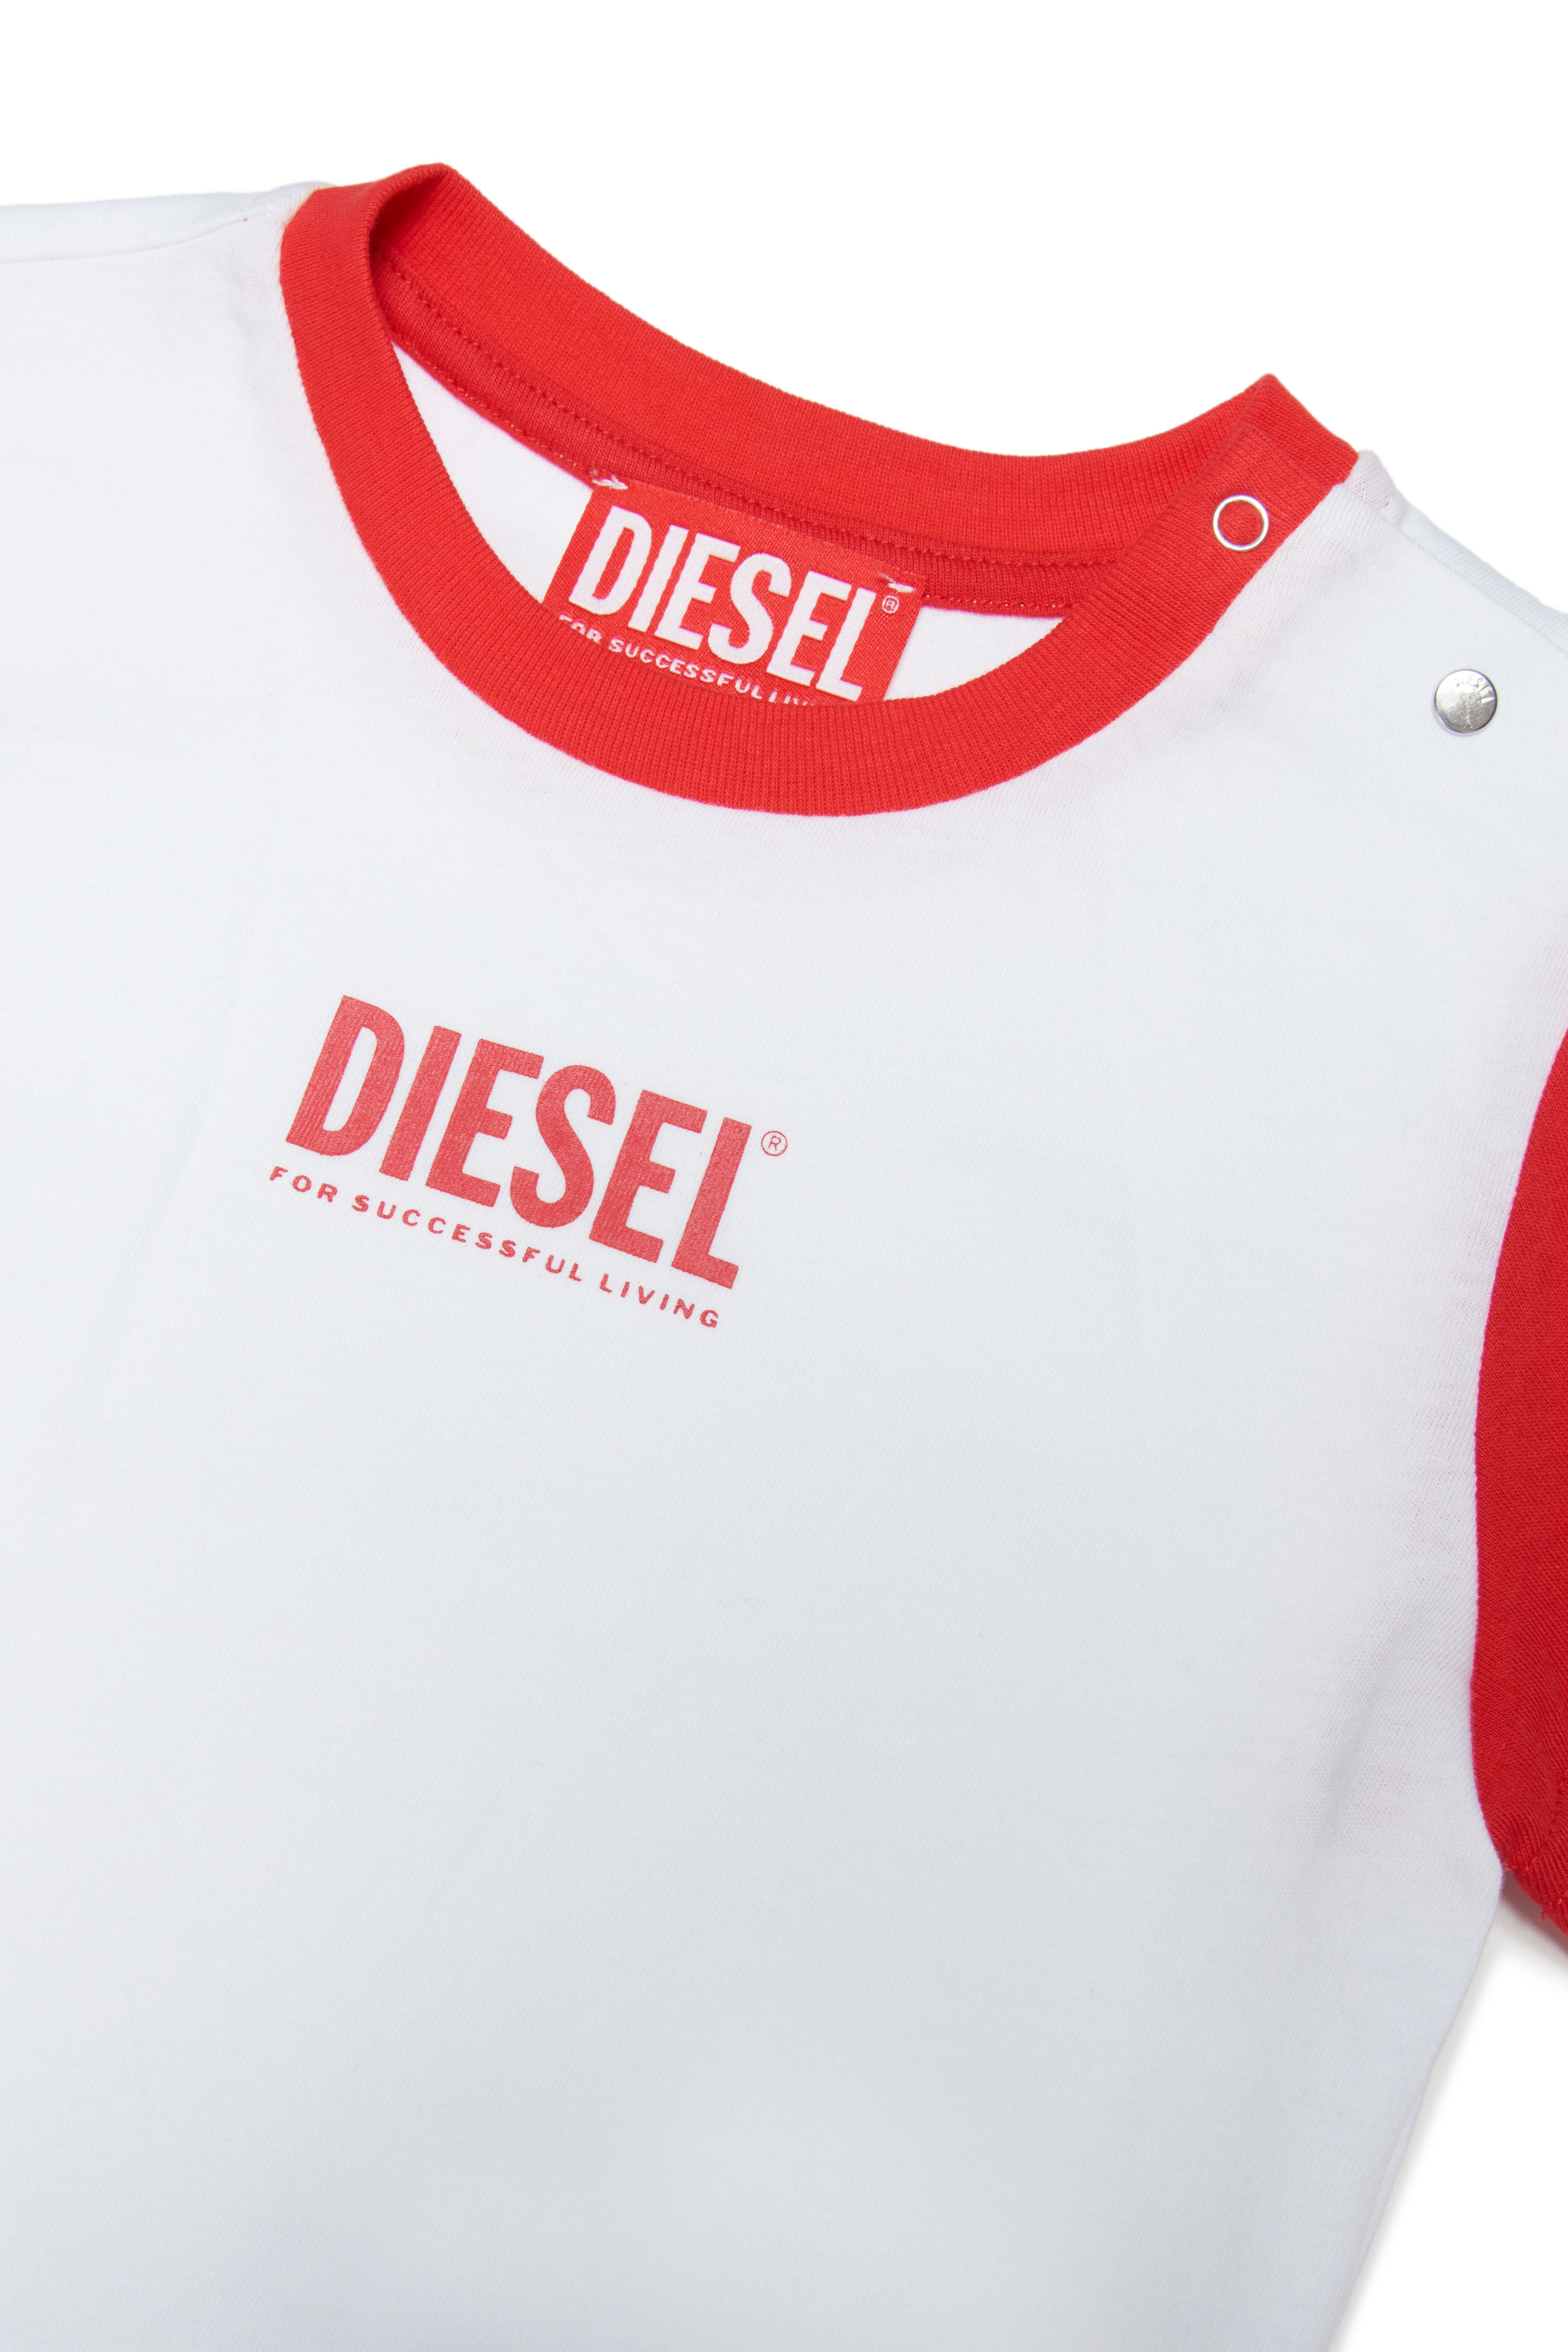 Diesel - MTANTEB, Blanco/Rojo - Image 3